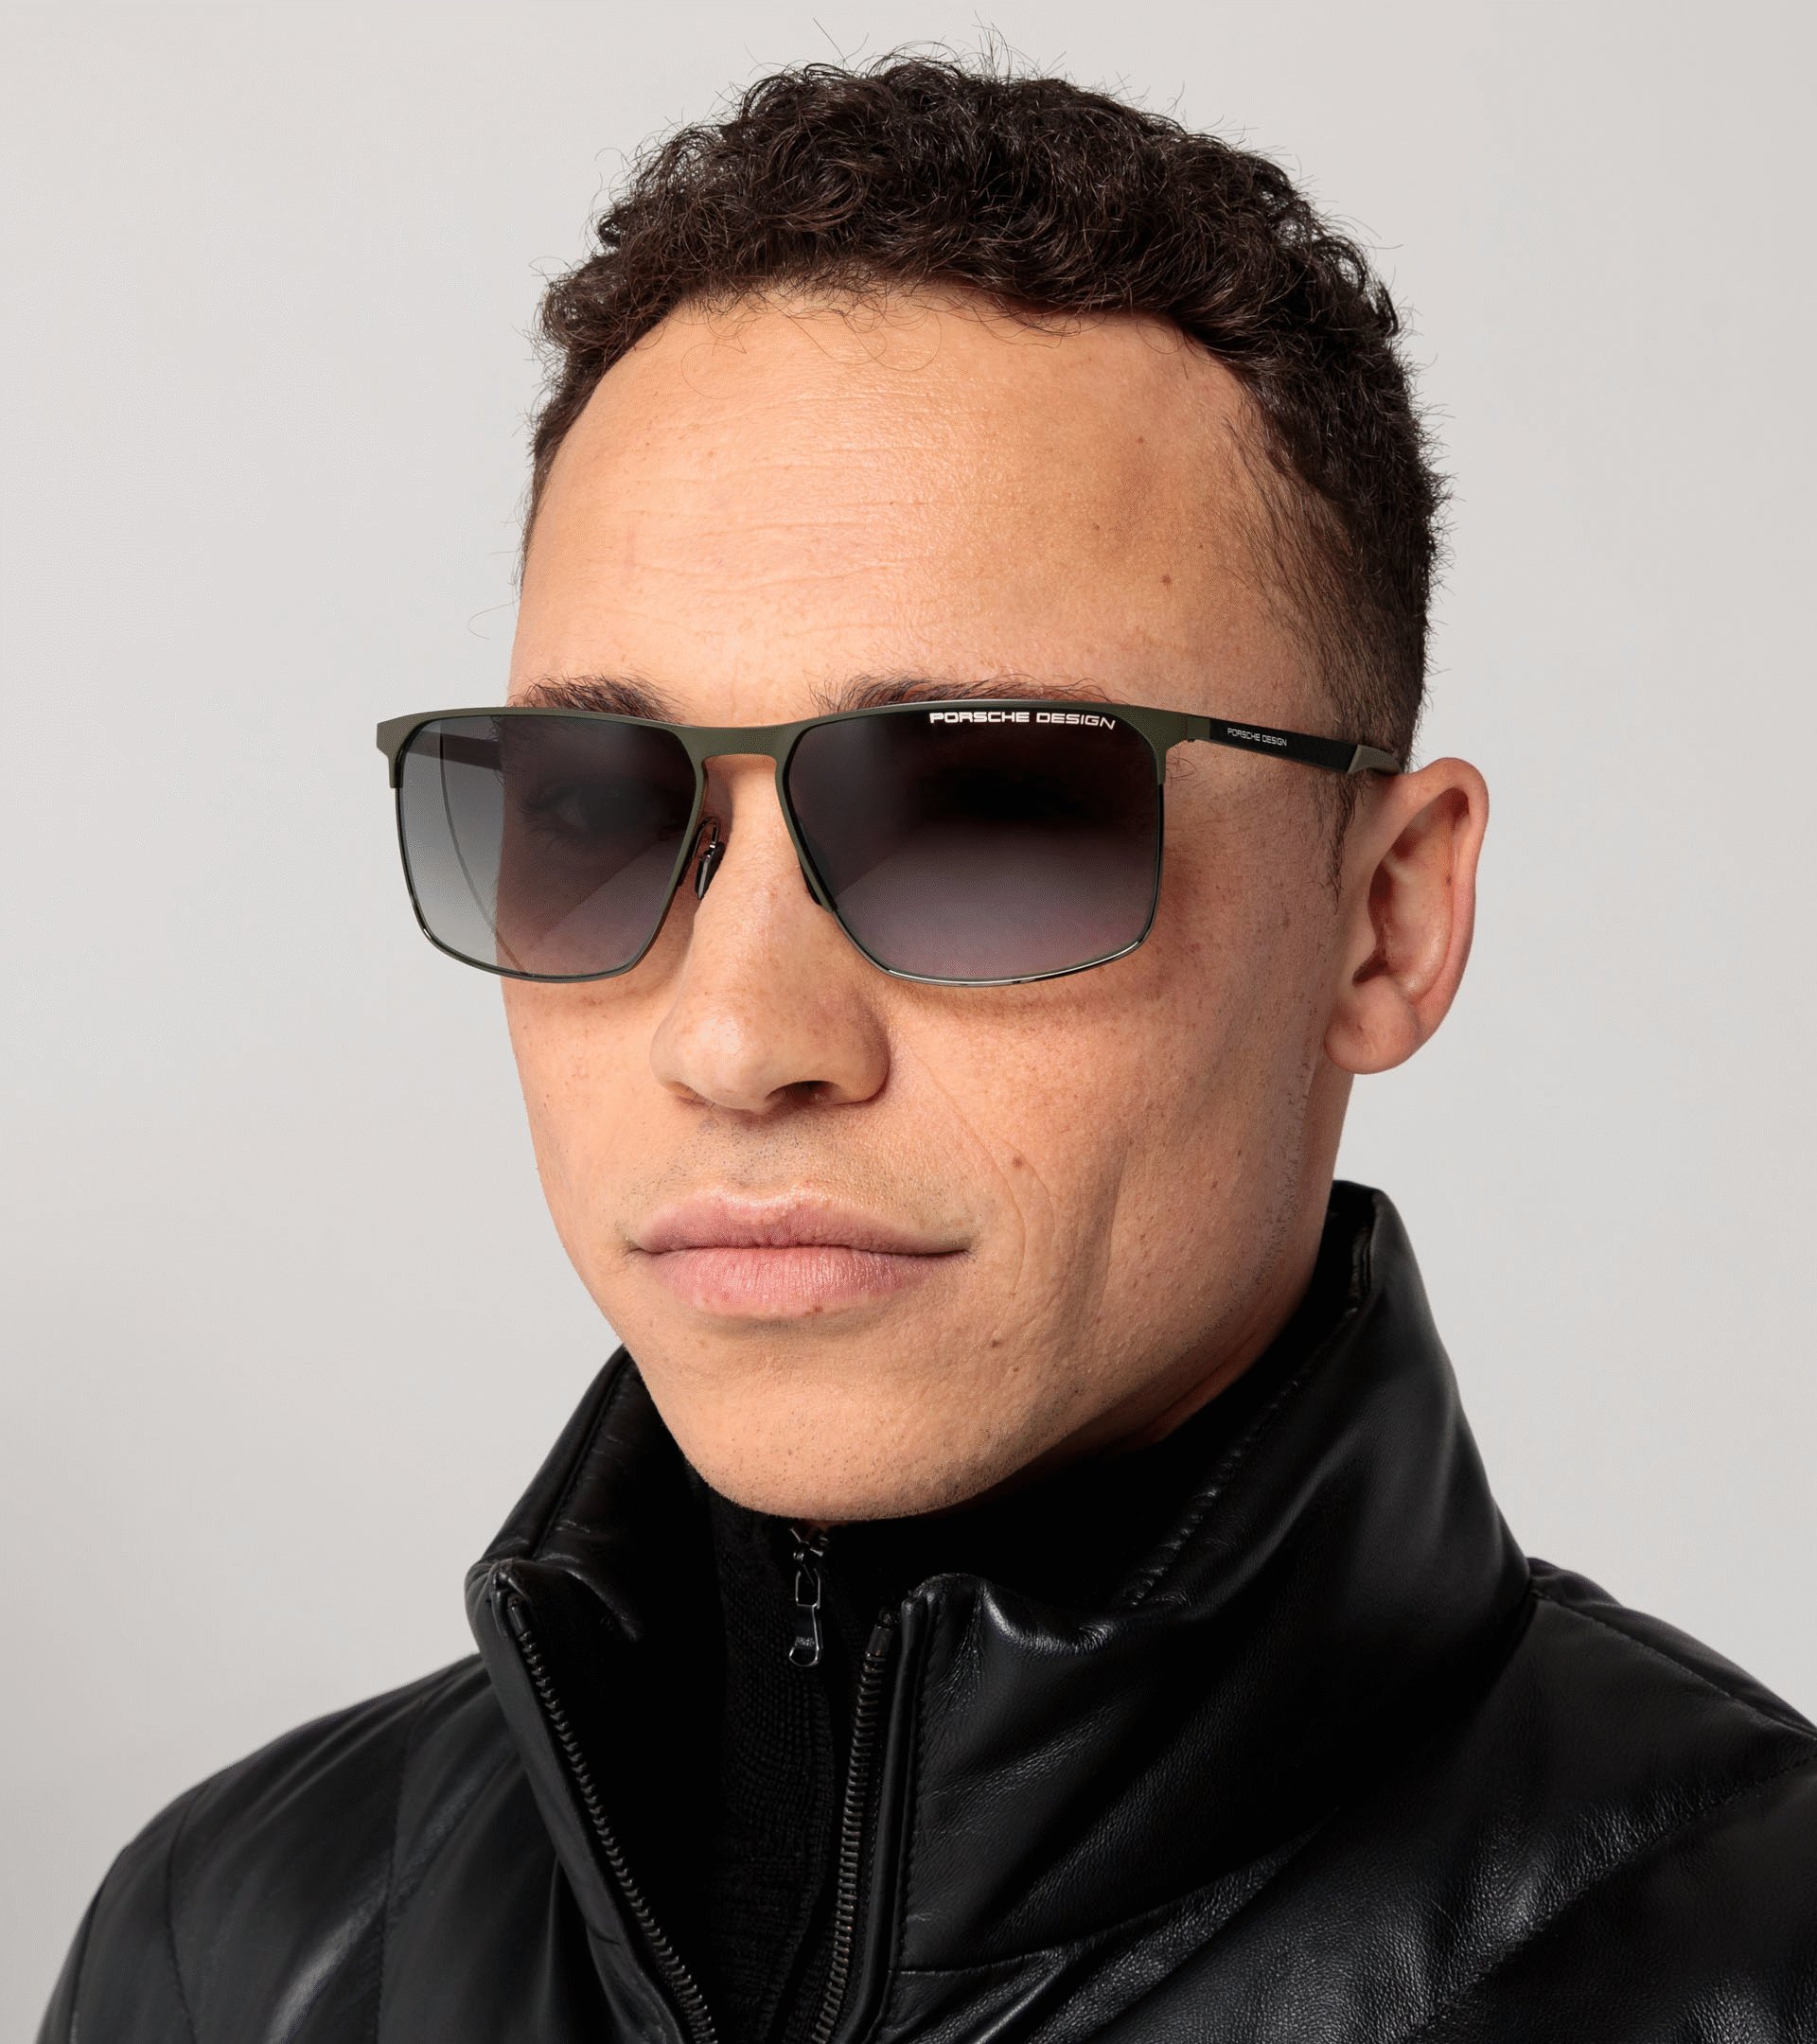 Sunglasses P´8964 - Square Sunglasses for Men | Porsche Design ...